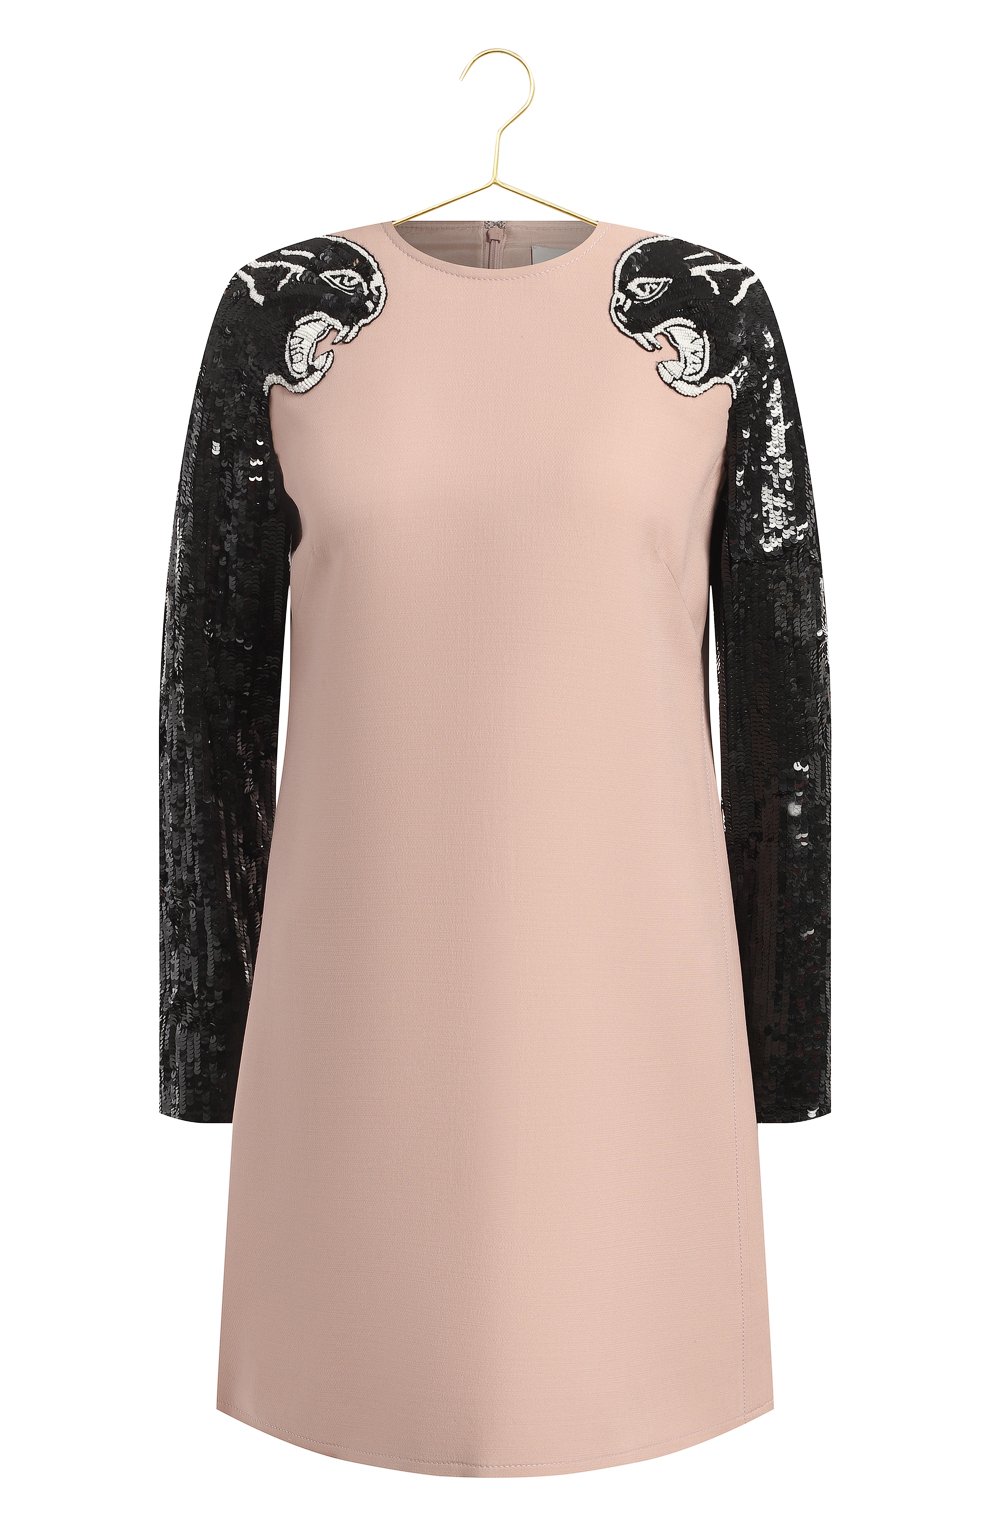 Платье из шерсти и шелка | Valentino | Розовый - 1